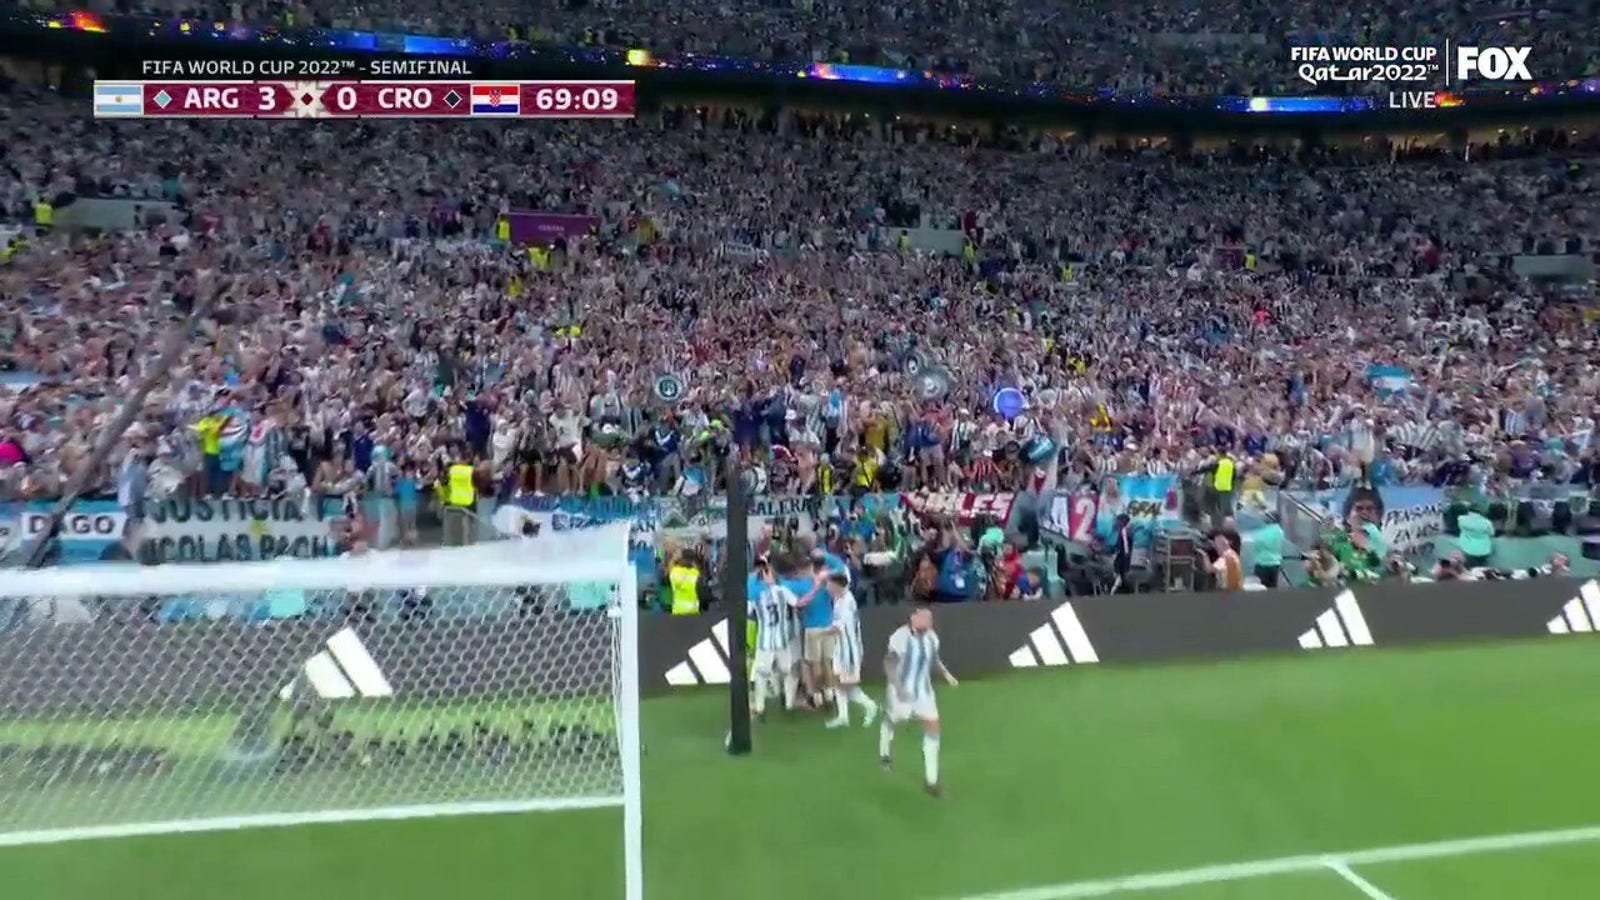 جوليان ألفاريز الأرجنتيني يسجل هدفا أمام كرواتيا في الدقيقة 69